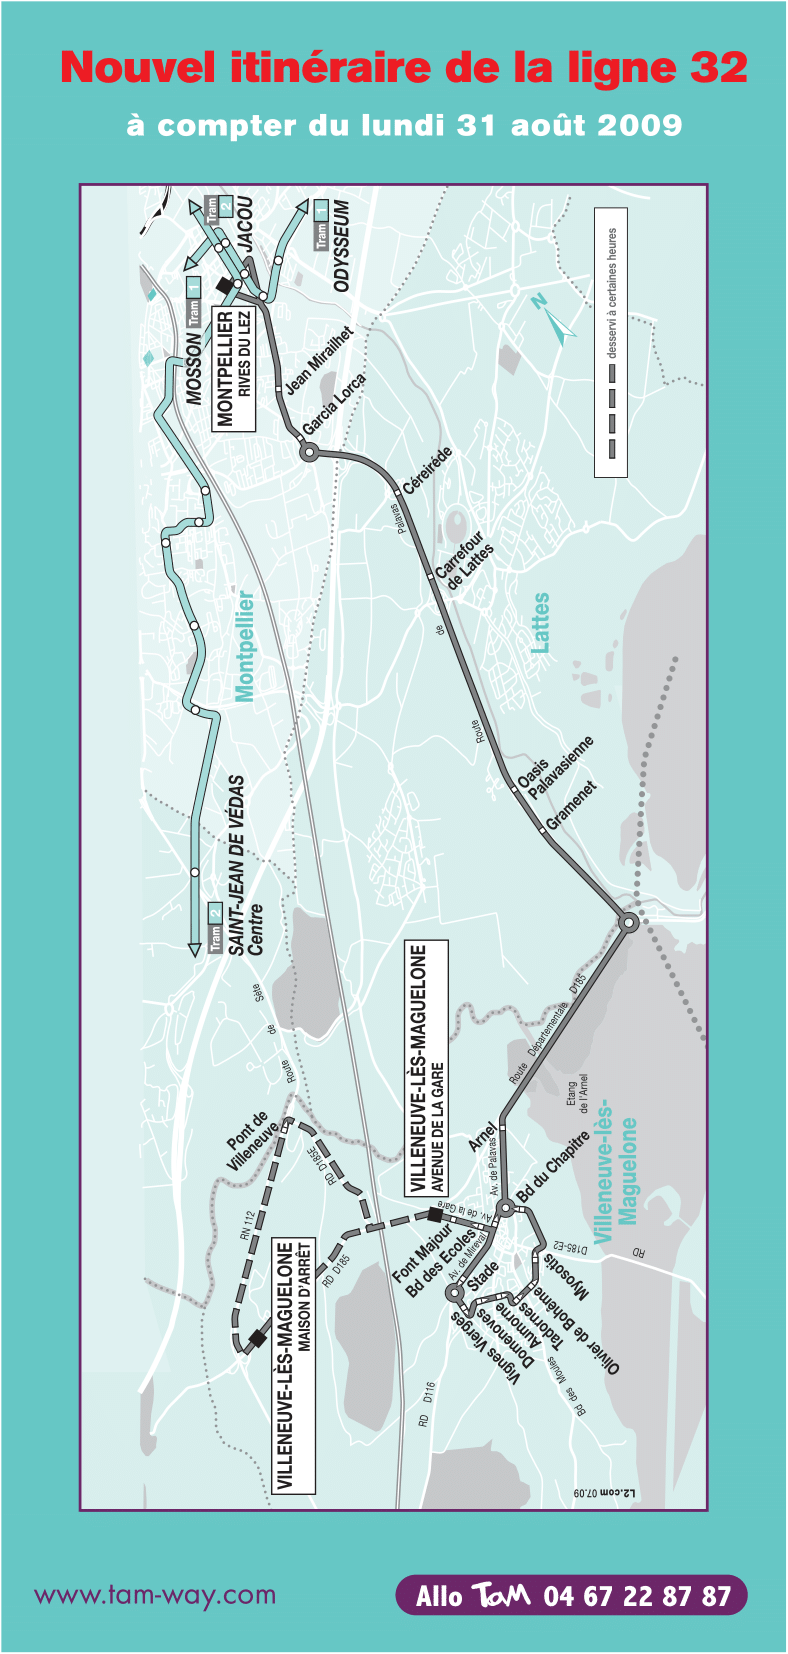 Plan ligne la ligne 32 à partir de septembre 2009. Source : document TaM